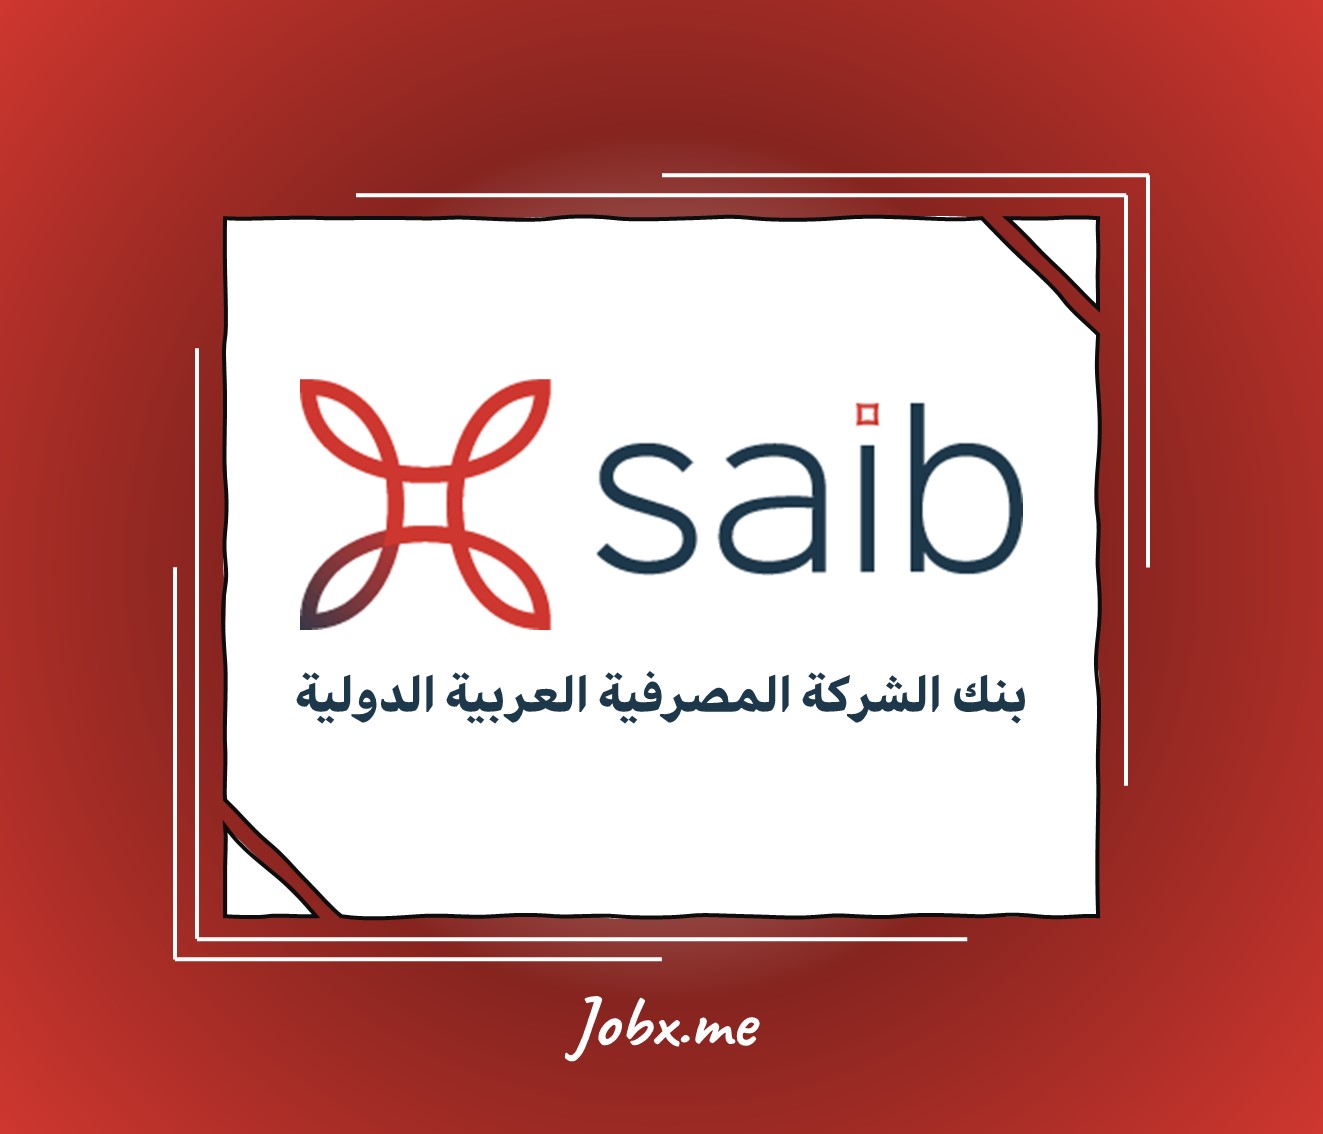 SAIB Career